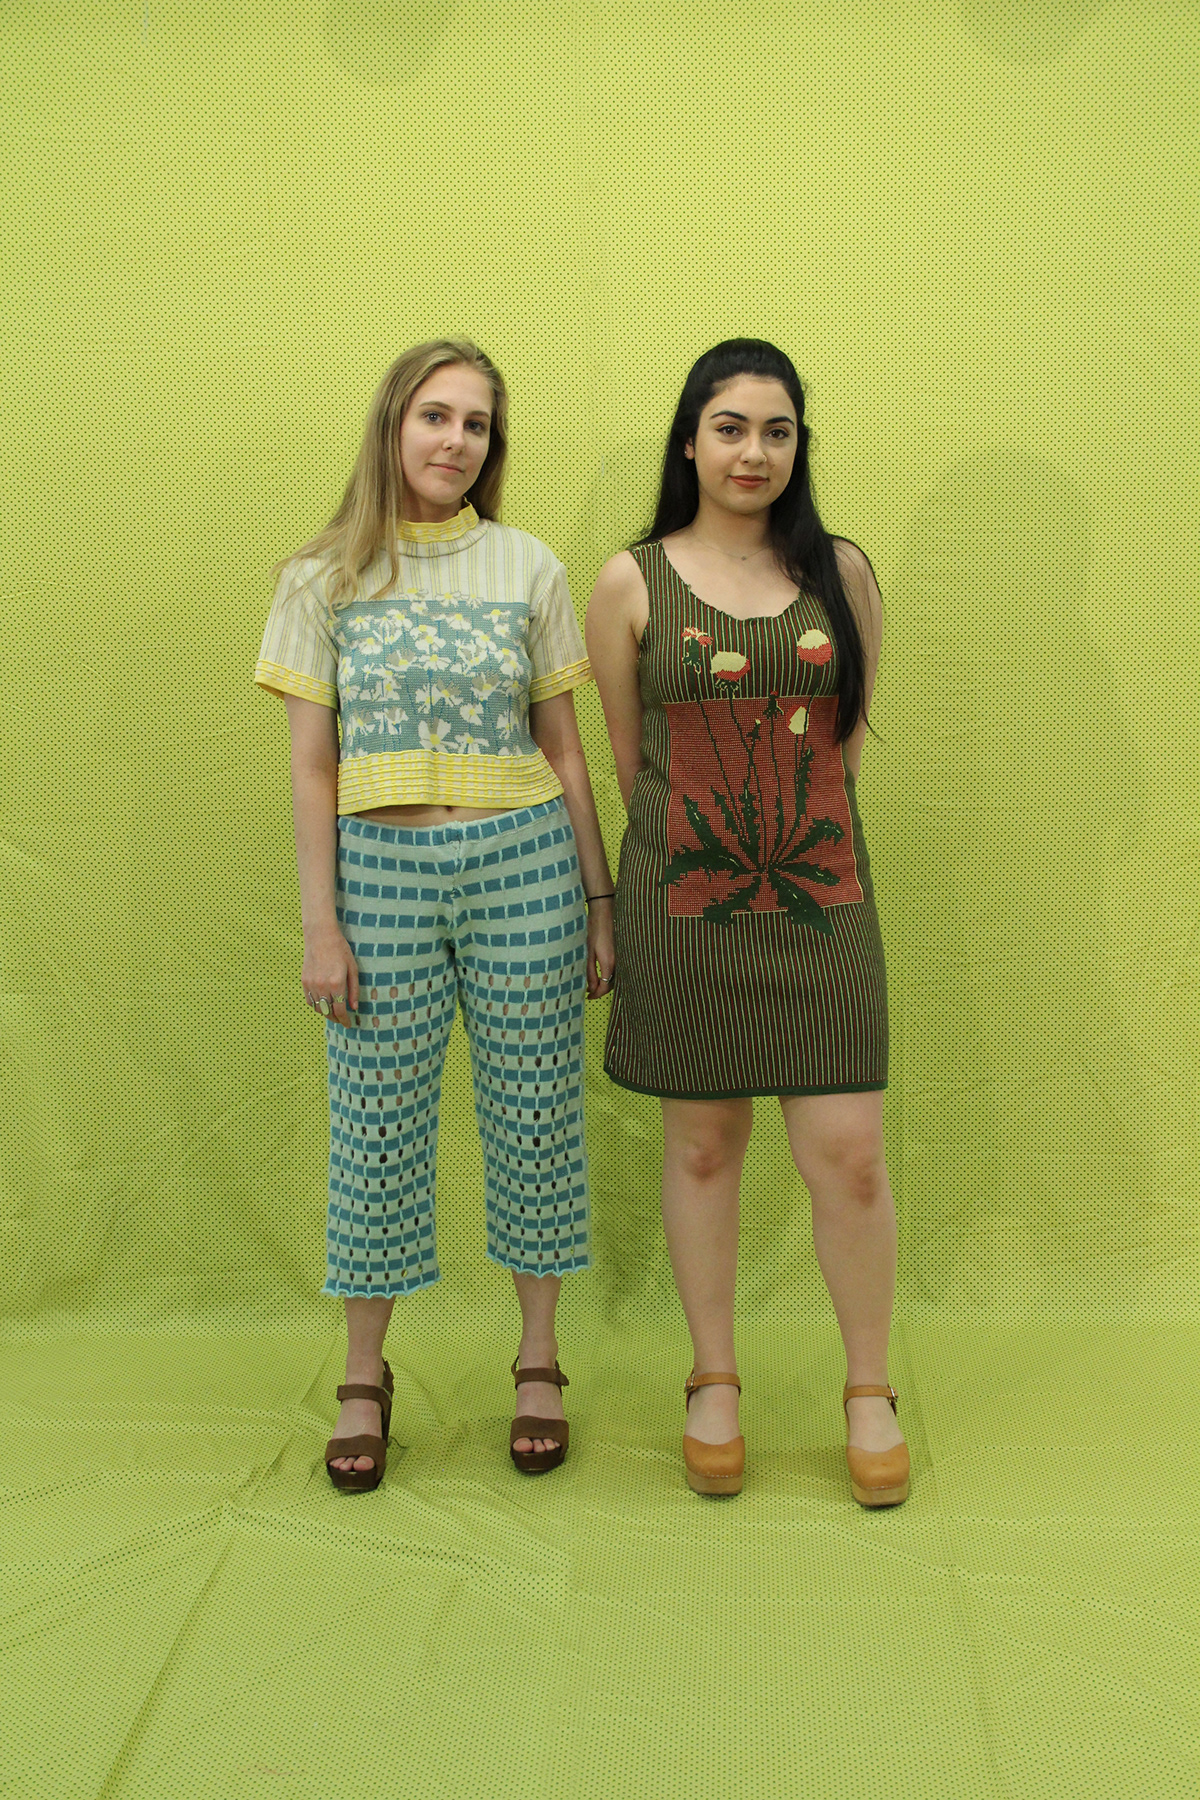 risd textiles Textiles Clothing Fashion  RISD Apparel